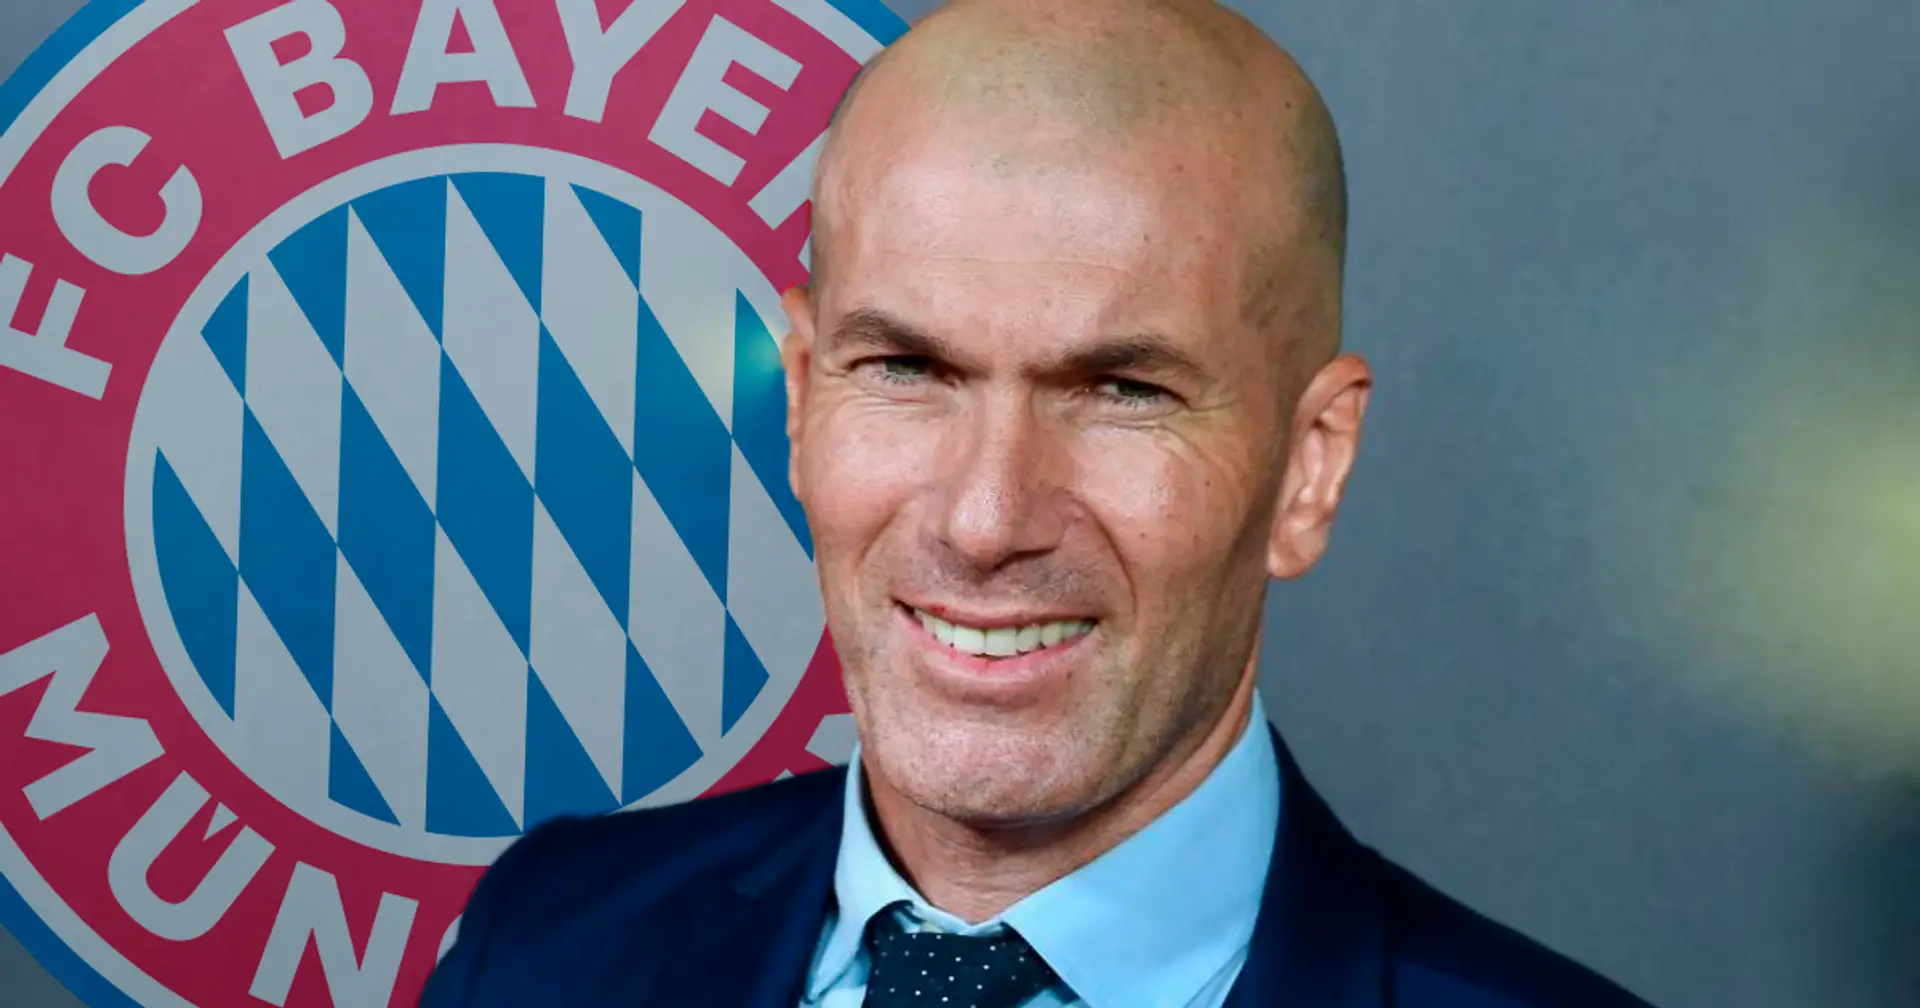 L'Equipe: Zidane ist bereit, wieder ein Team zu trainieren - er ist ein Kandidat bei Bayern!